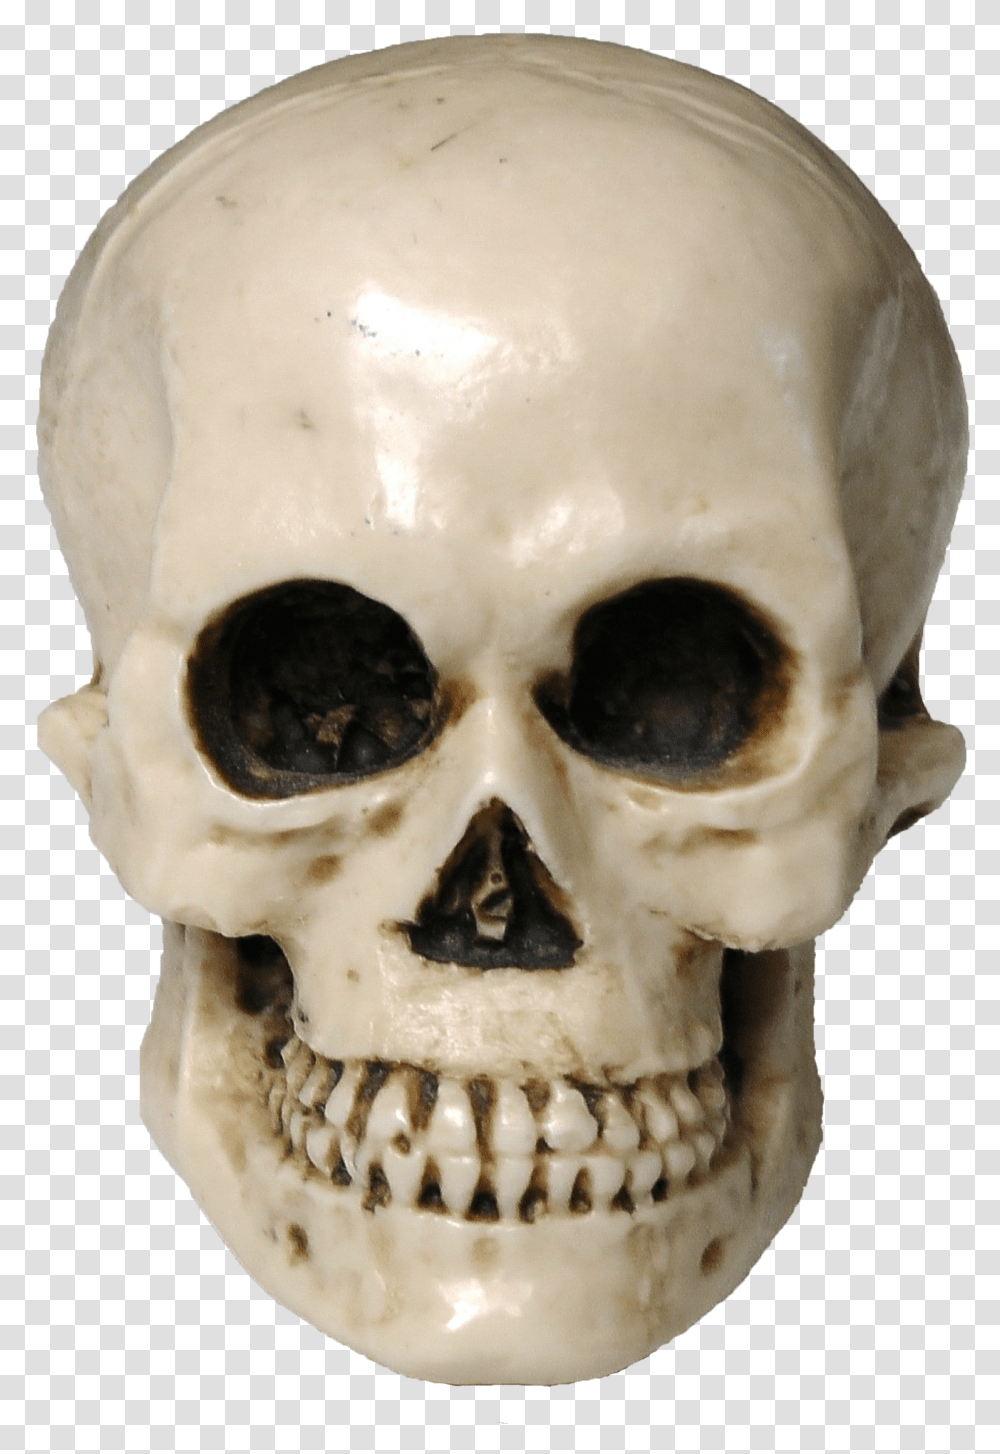 Download Skull Image For Free Skeleton Transparent Png